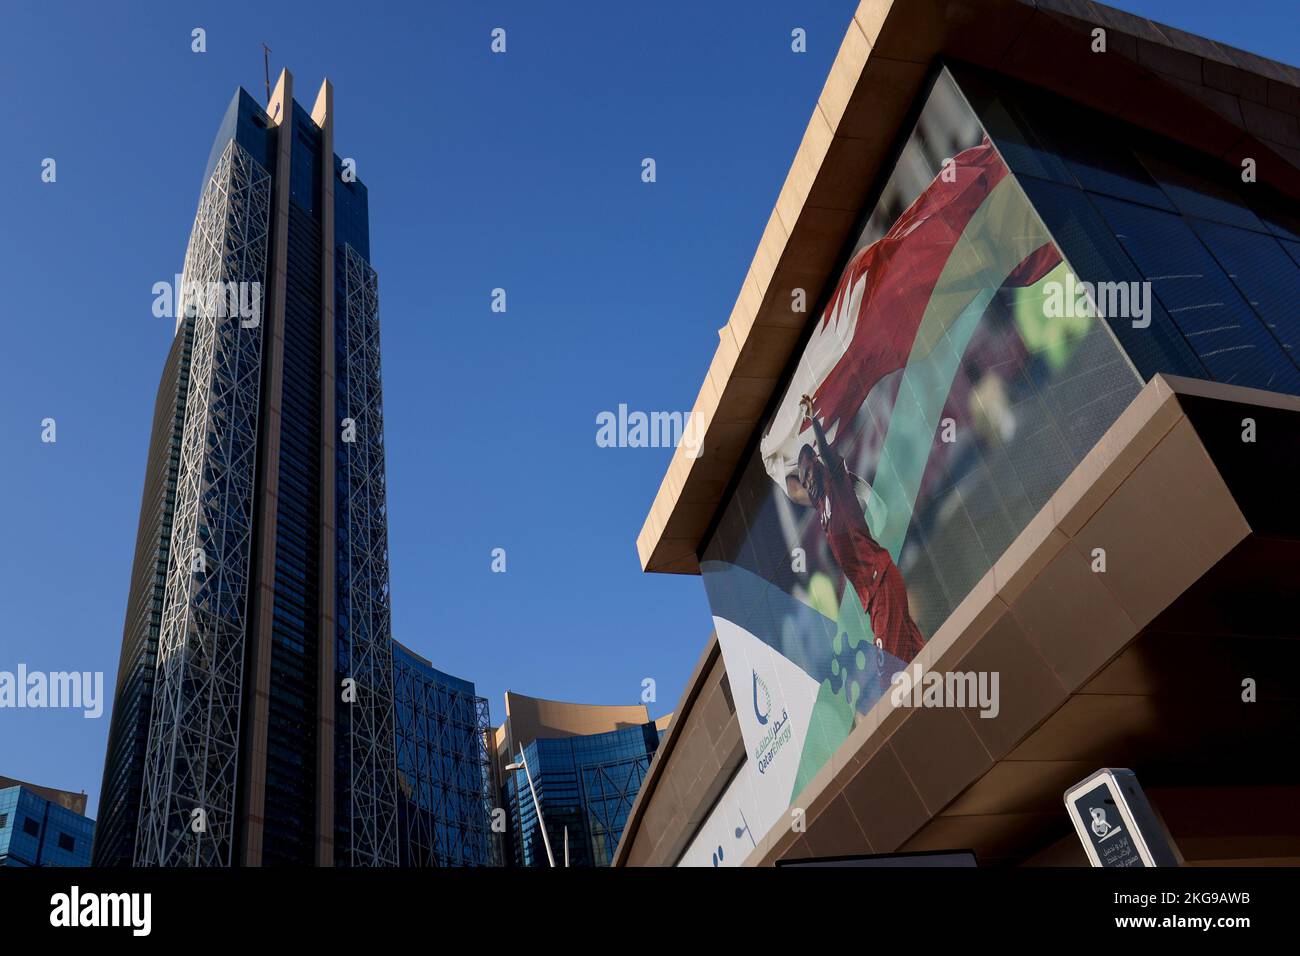 Les drapeaux des participants à la coupe du monde de la FIFA et d'autres symboles de football sont visibles sur les bâtiments de Doha, au Qatar, sur 22 novembre 2022. Photo: Igor Kralj/PIXSELL Banque D'Images